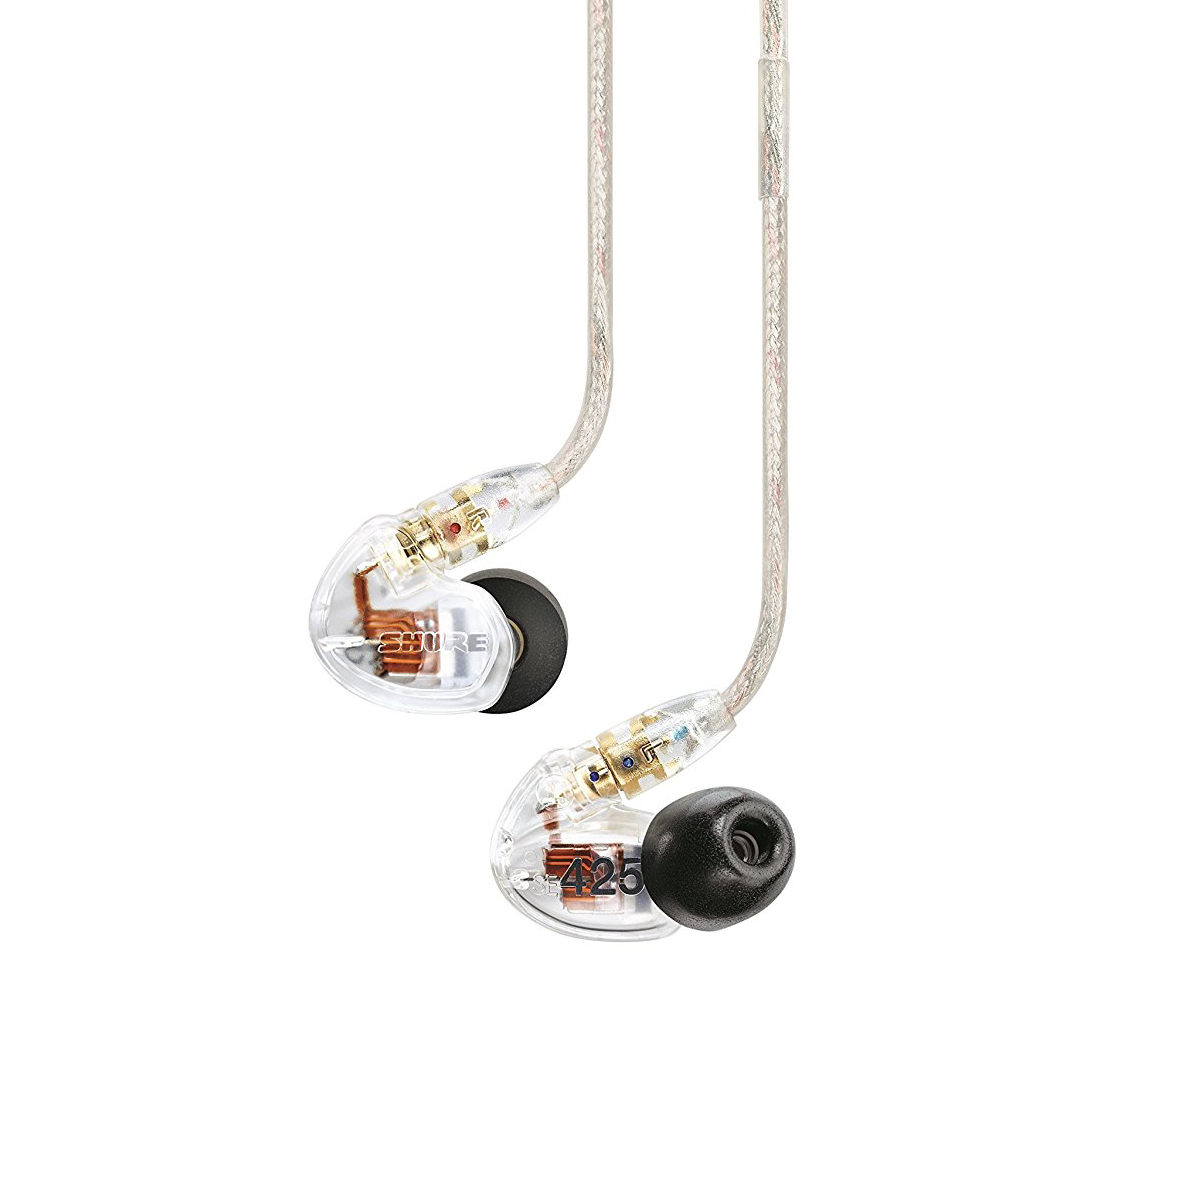 Headphones from Shure